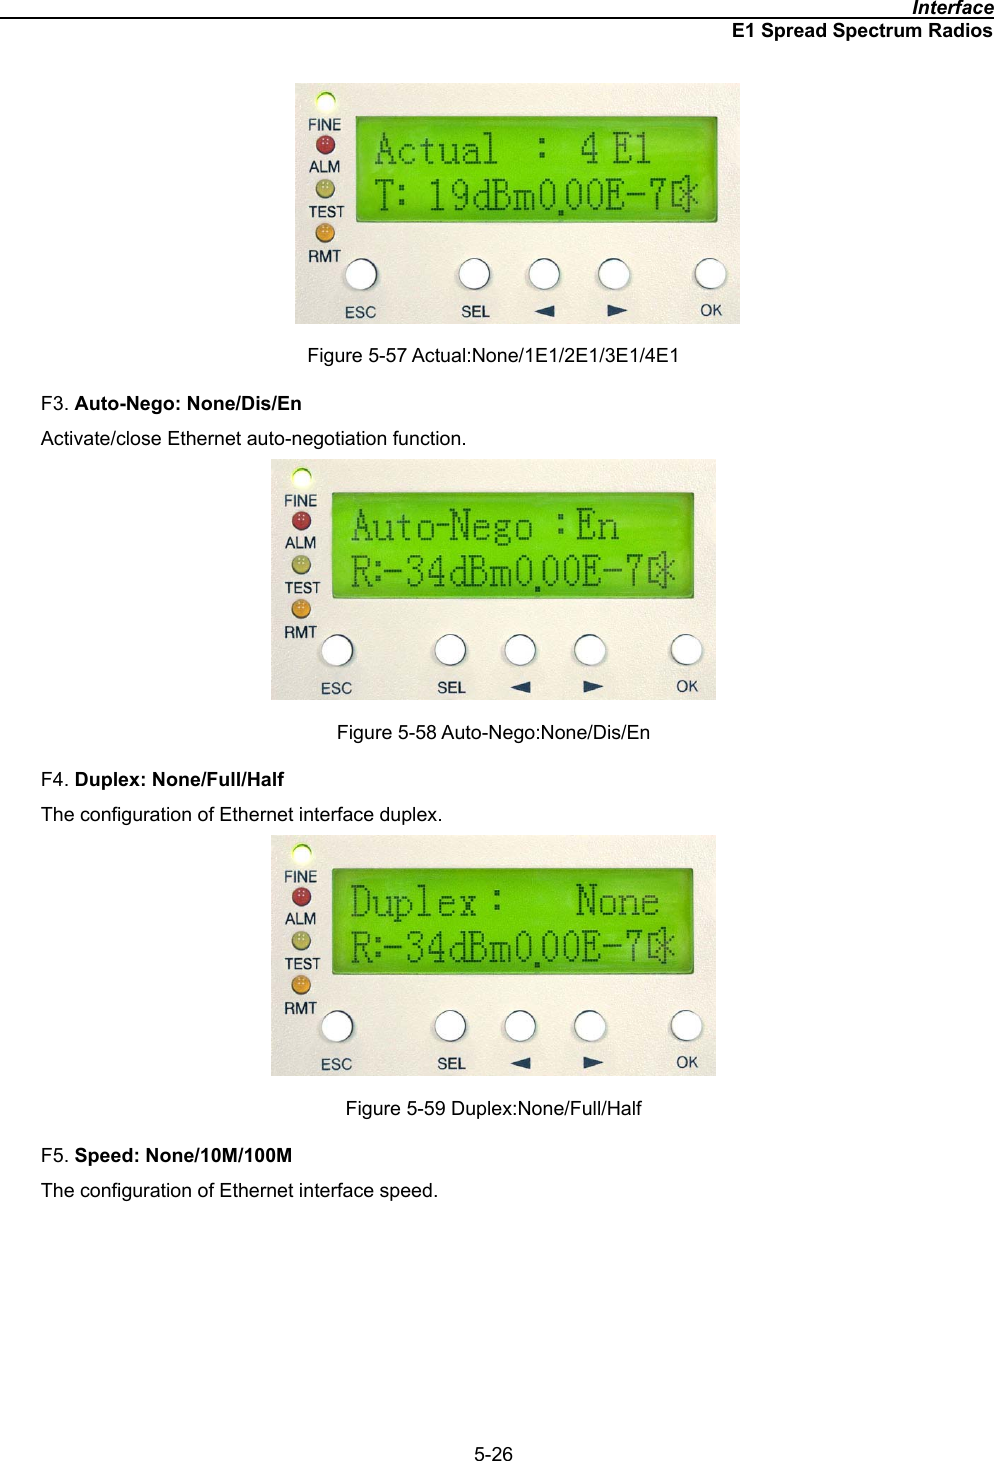                                                                                              InterfaceE1 Spread Spectrum Radios5-26Figure 5-57 Actual:None/1E1/2E1/3E1/4E1 F3. Auto-Nego: None/Dis/EnActivate/close Ethernet auto-negotiation function.   Figure 5-58 Auto-Nego:None/Dis/En F4. Duplex: None/Full/HalfThe configuration of Ethernet interface duplex.   Figure 5-59 Duplex:None/Full/Half F5. Speed: None/10M/100MThe configuration of Ethernet interface speed.   